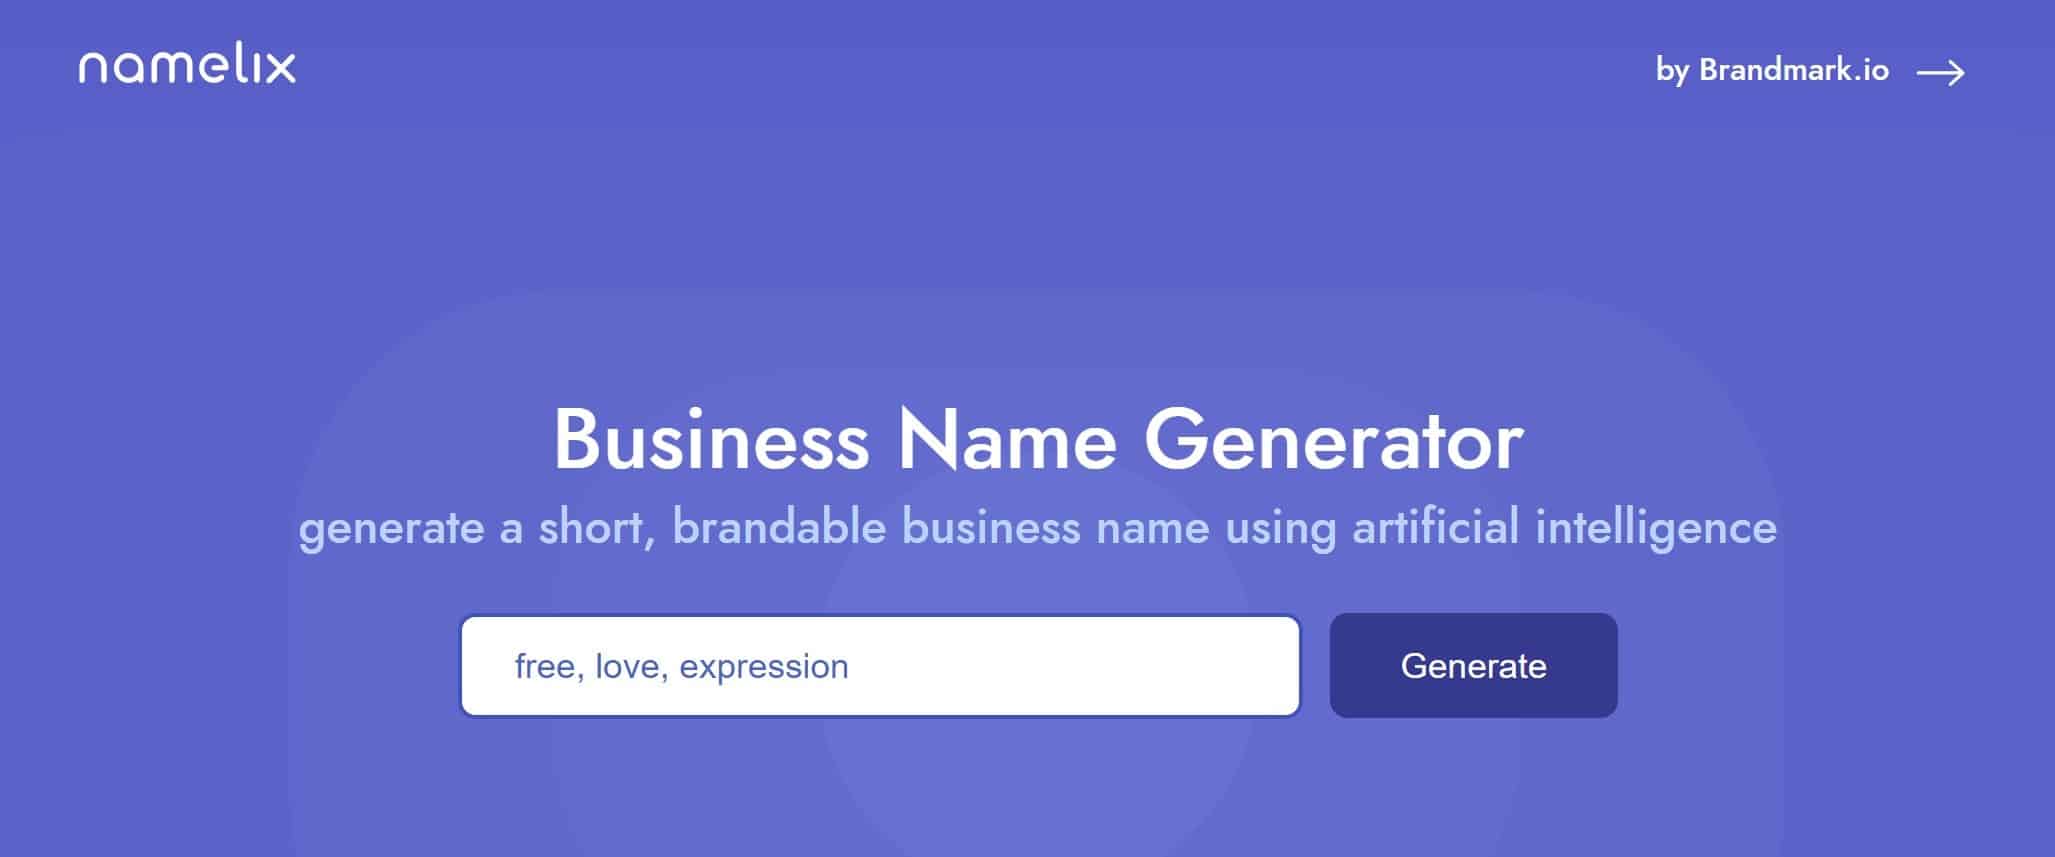 business name generator1